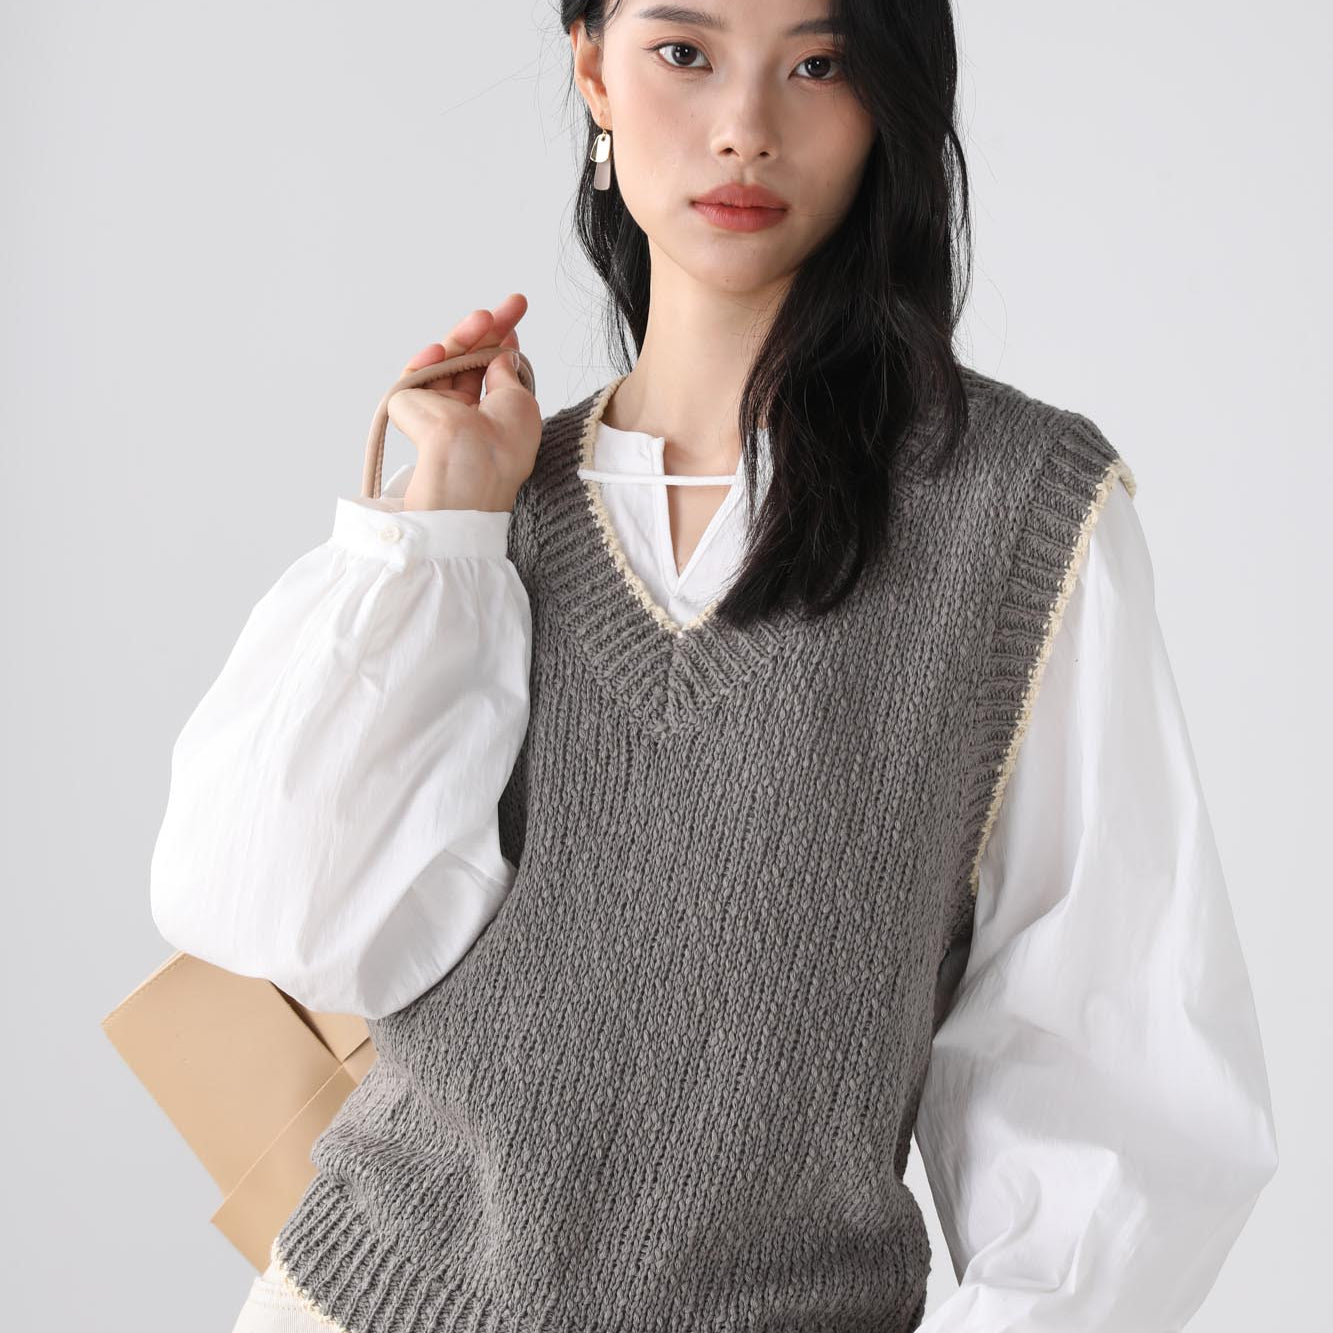 Evie knit gray vest top